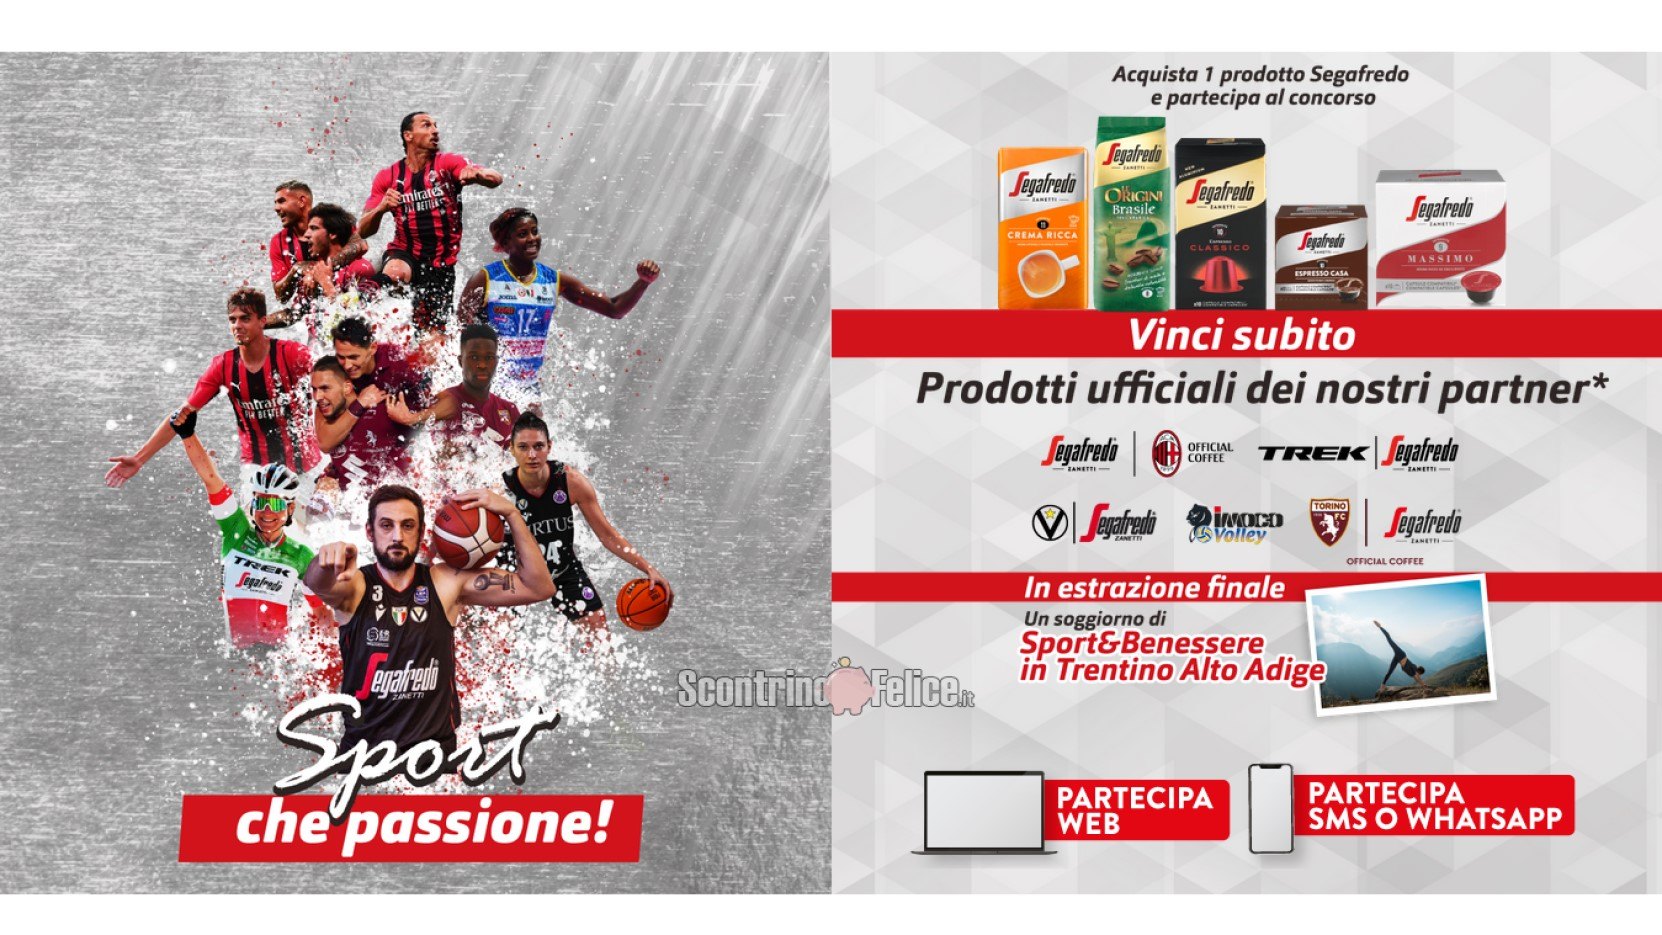 Concorso caffè Segafredo Zanetti "Sport che passione": vinci gadget ufficiali dei partner e un soggiorno in Trentino Alto Adige